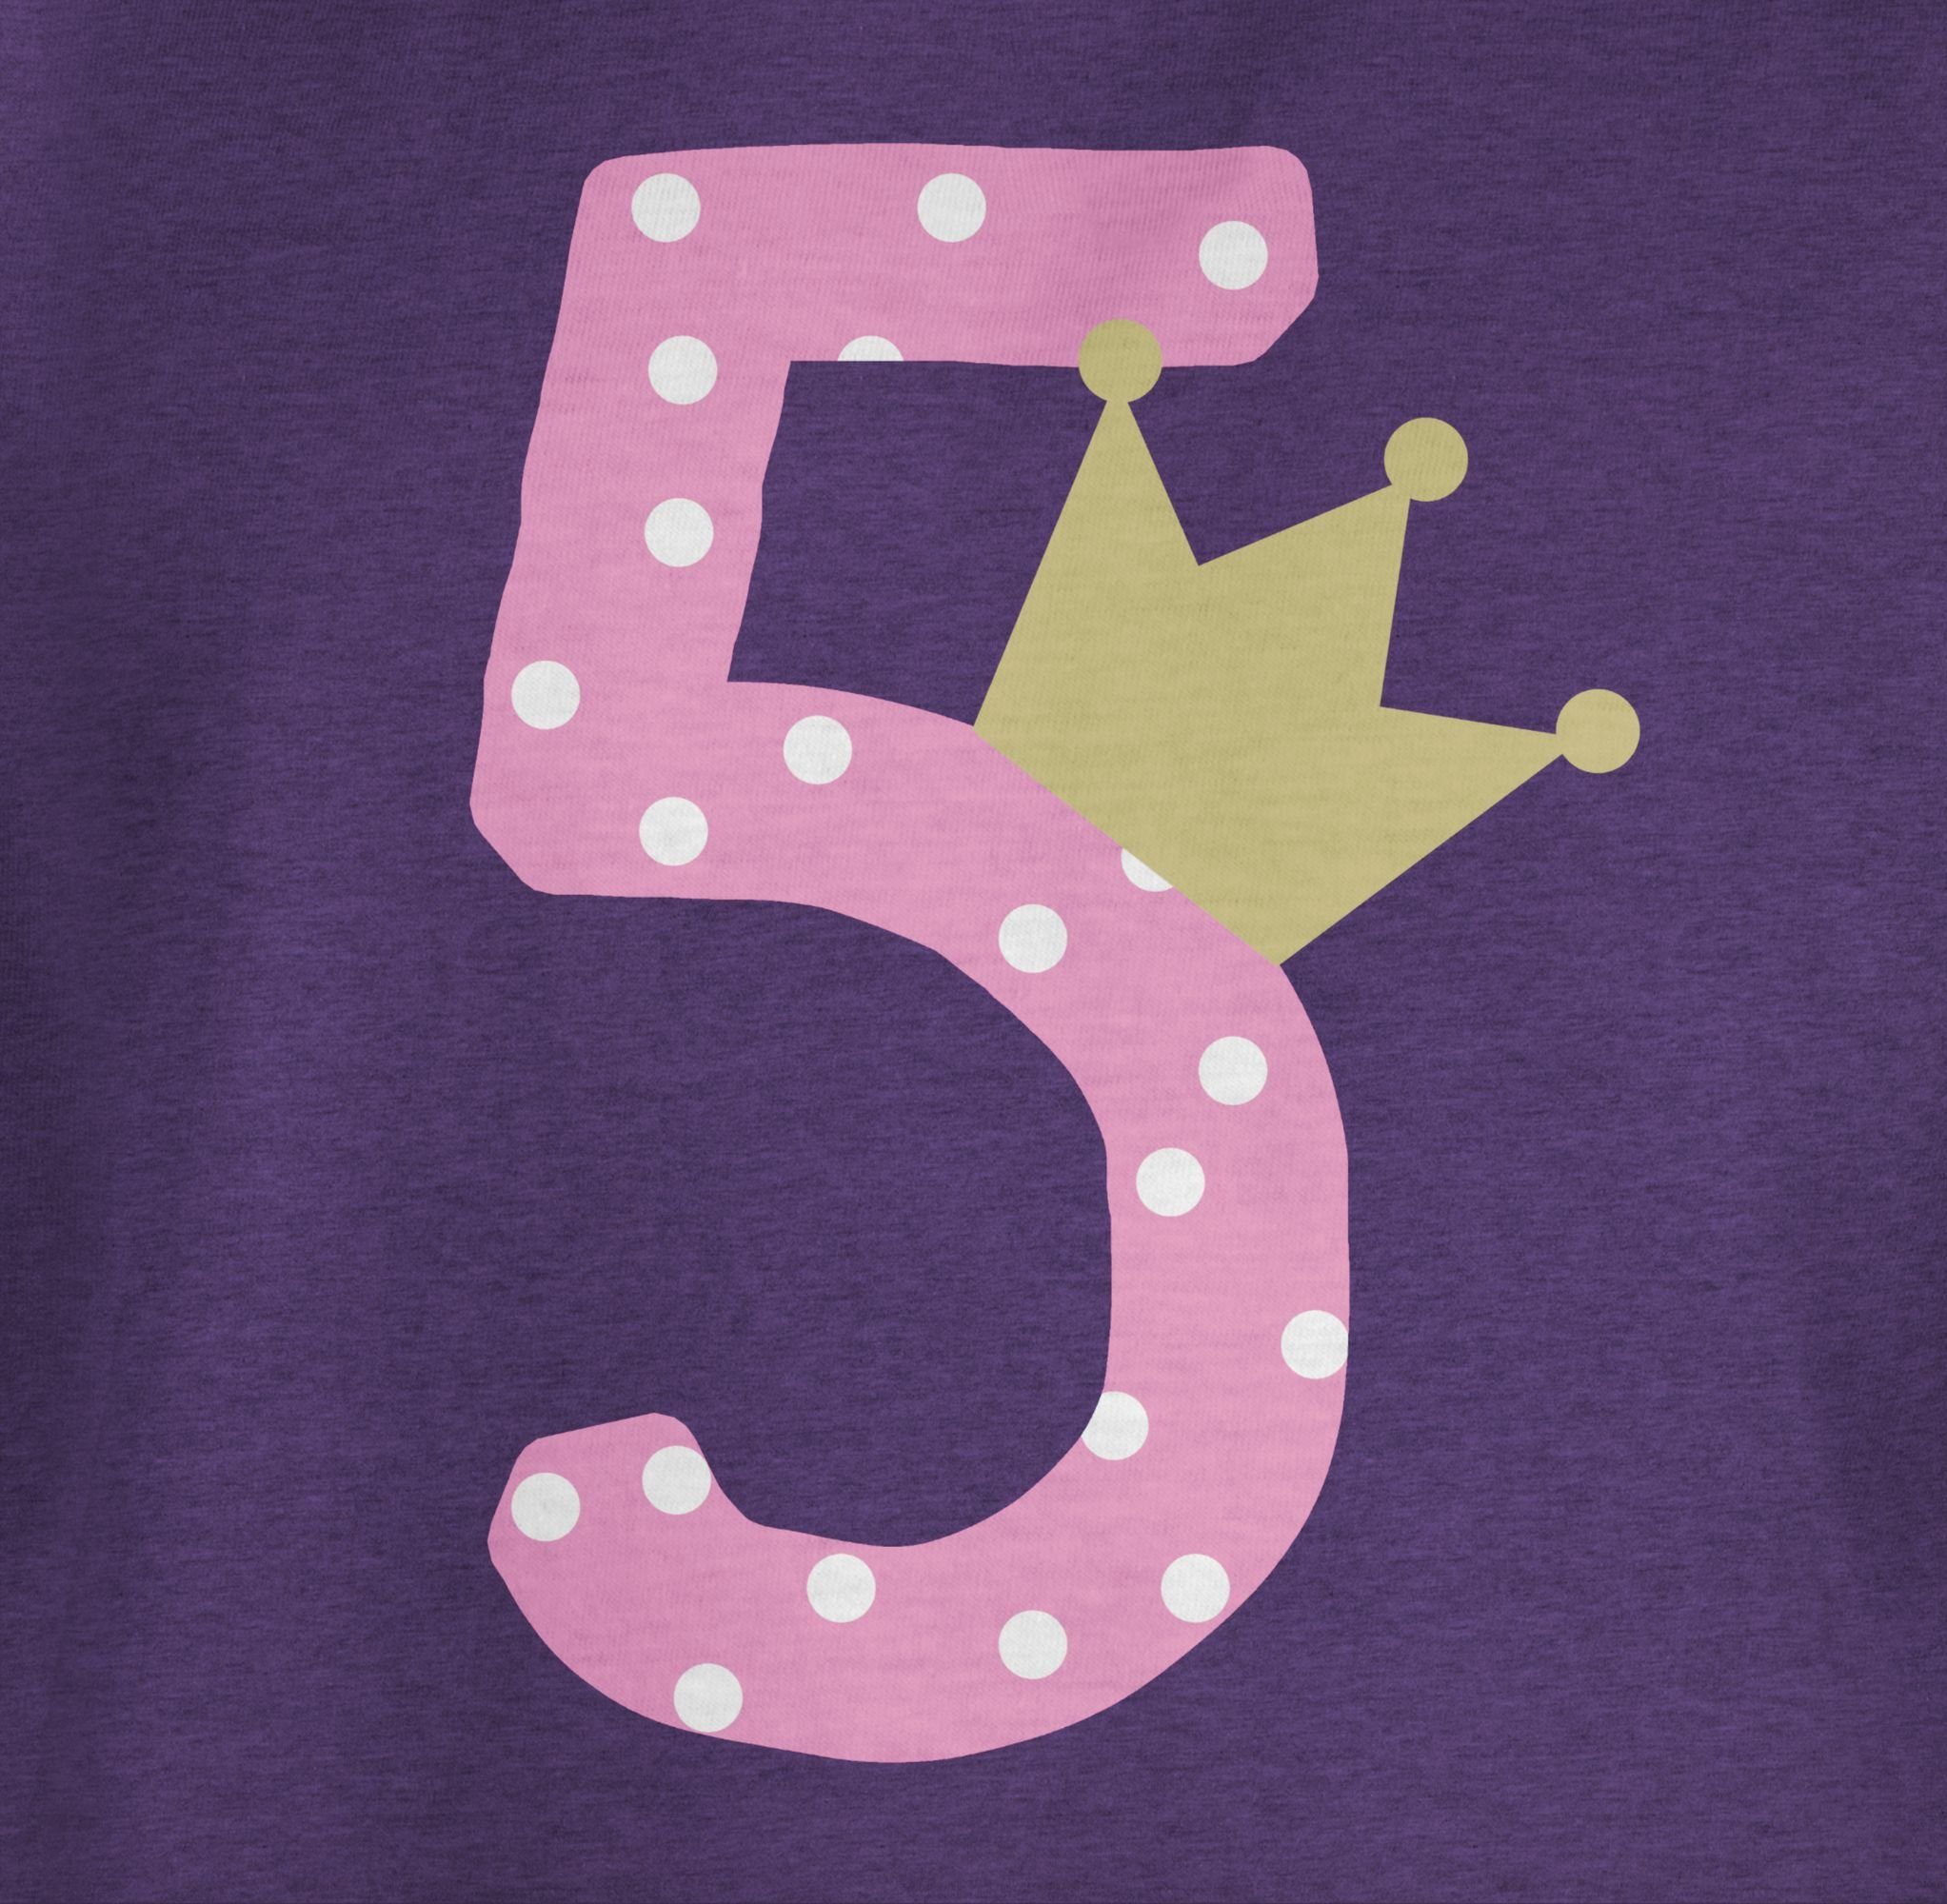 Shirtracer T-Shirt Fünf Krone Fünfter 5. Meliert Mädchen Lila Geburtstag 2